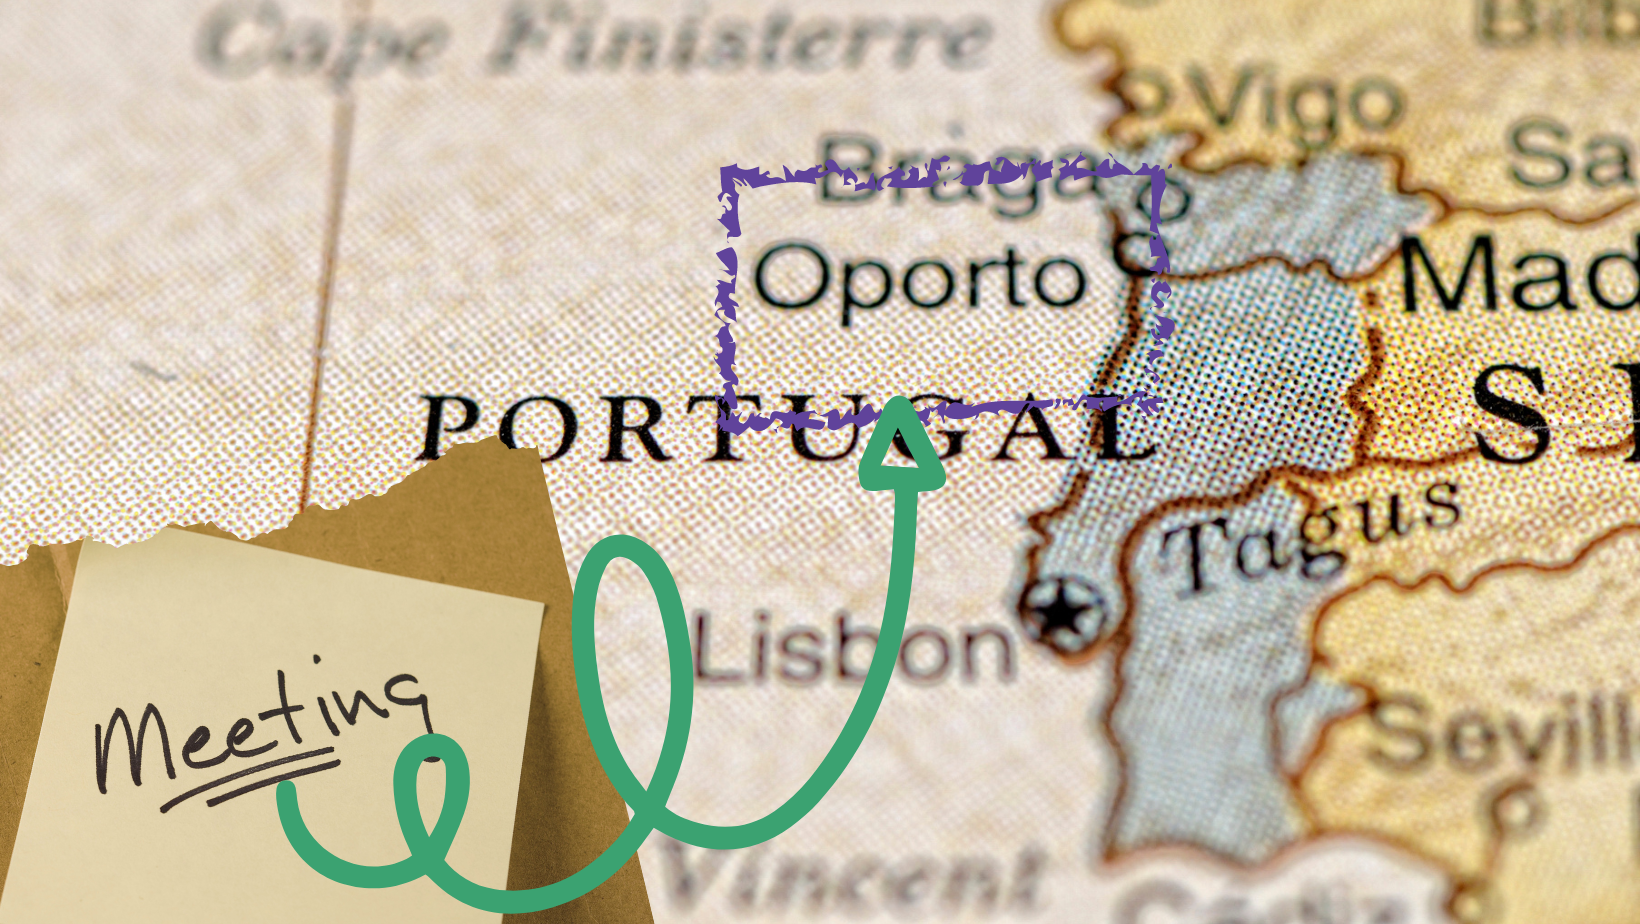 Incontro degli Amici europei in Portogallo